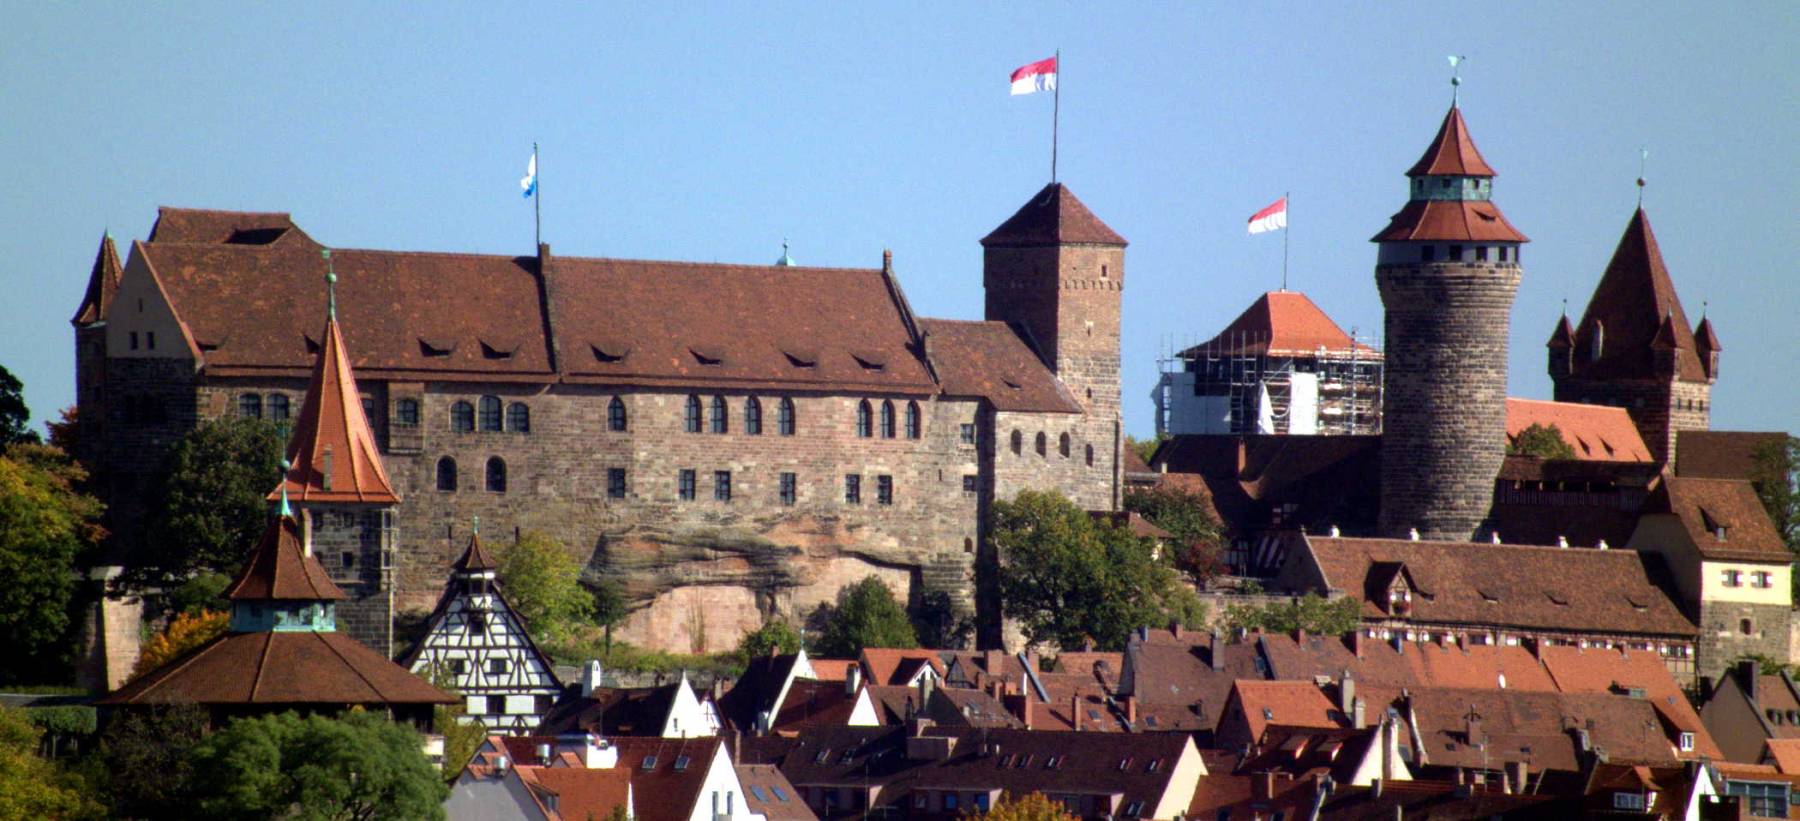 Burg Nürnberg 03 by DALIBRI